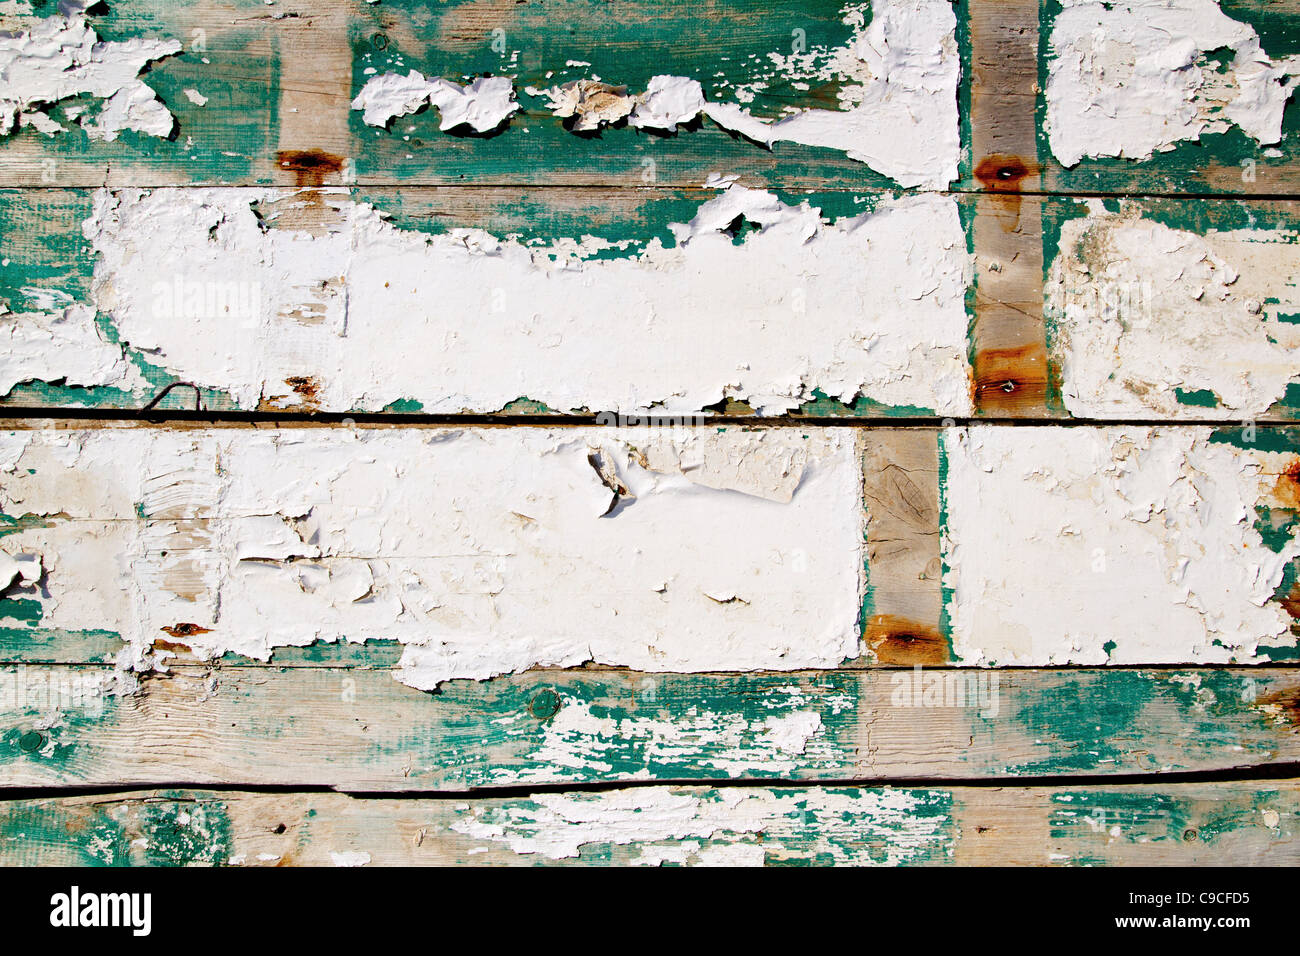 Grunge texture pittore di legno in bianco e verde Foto Stock